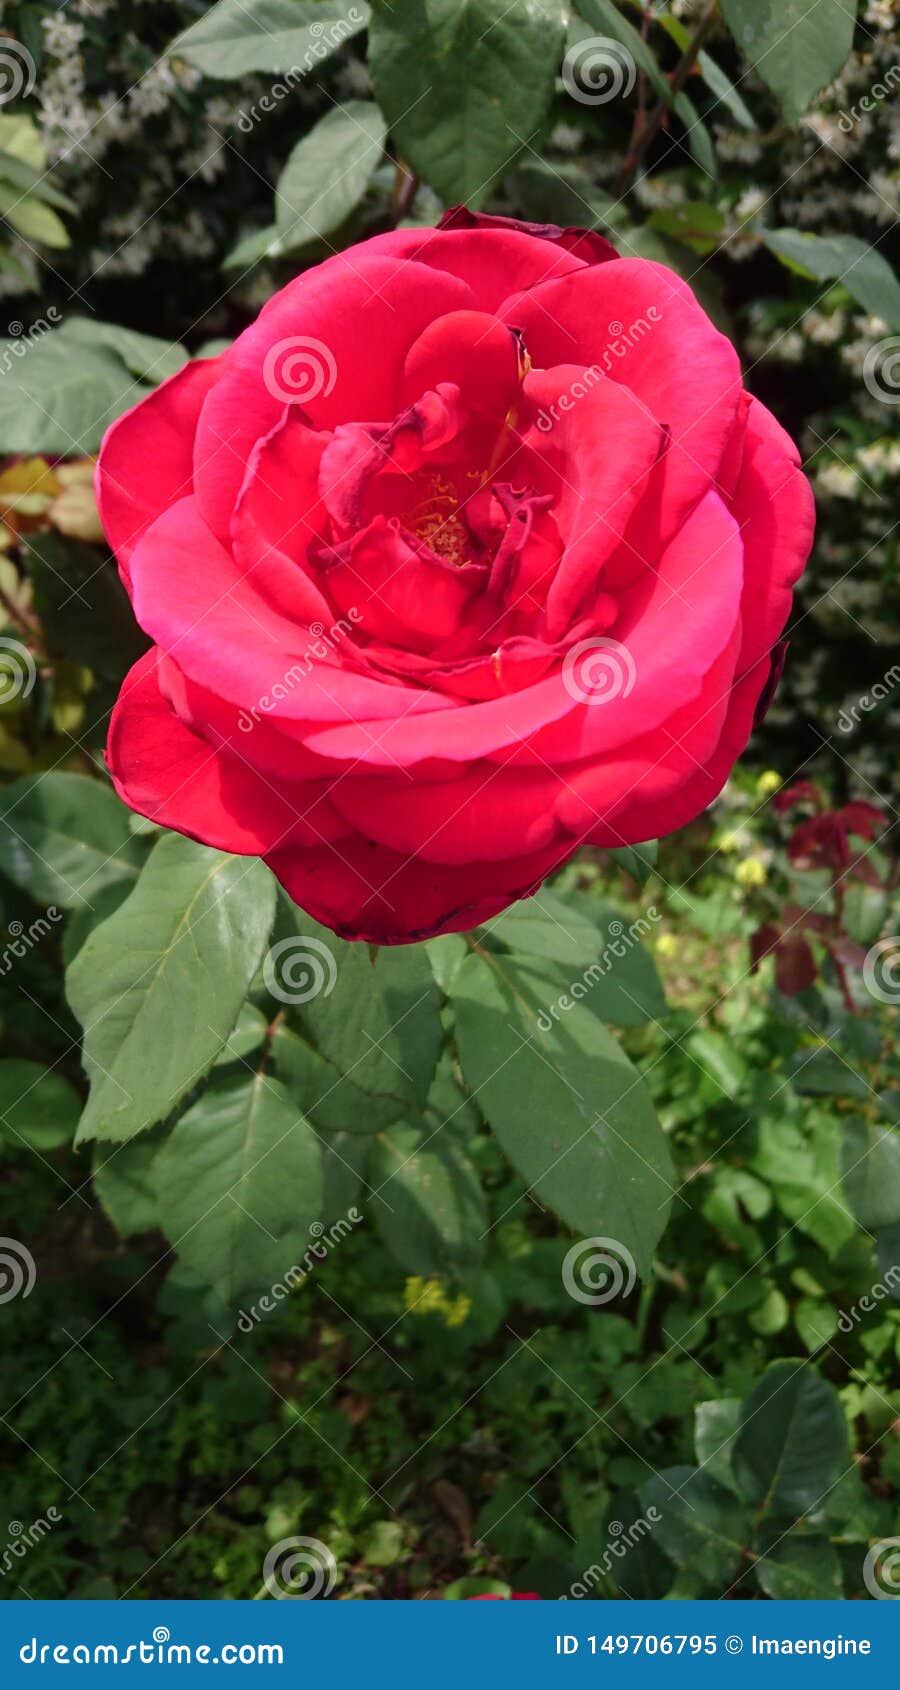 bright red velvety rose flower in the garden